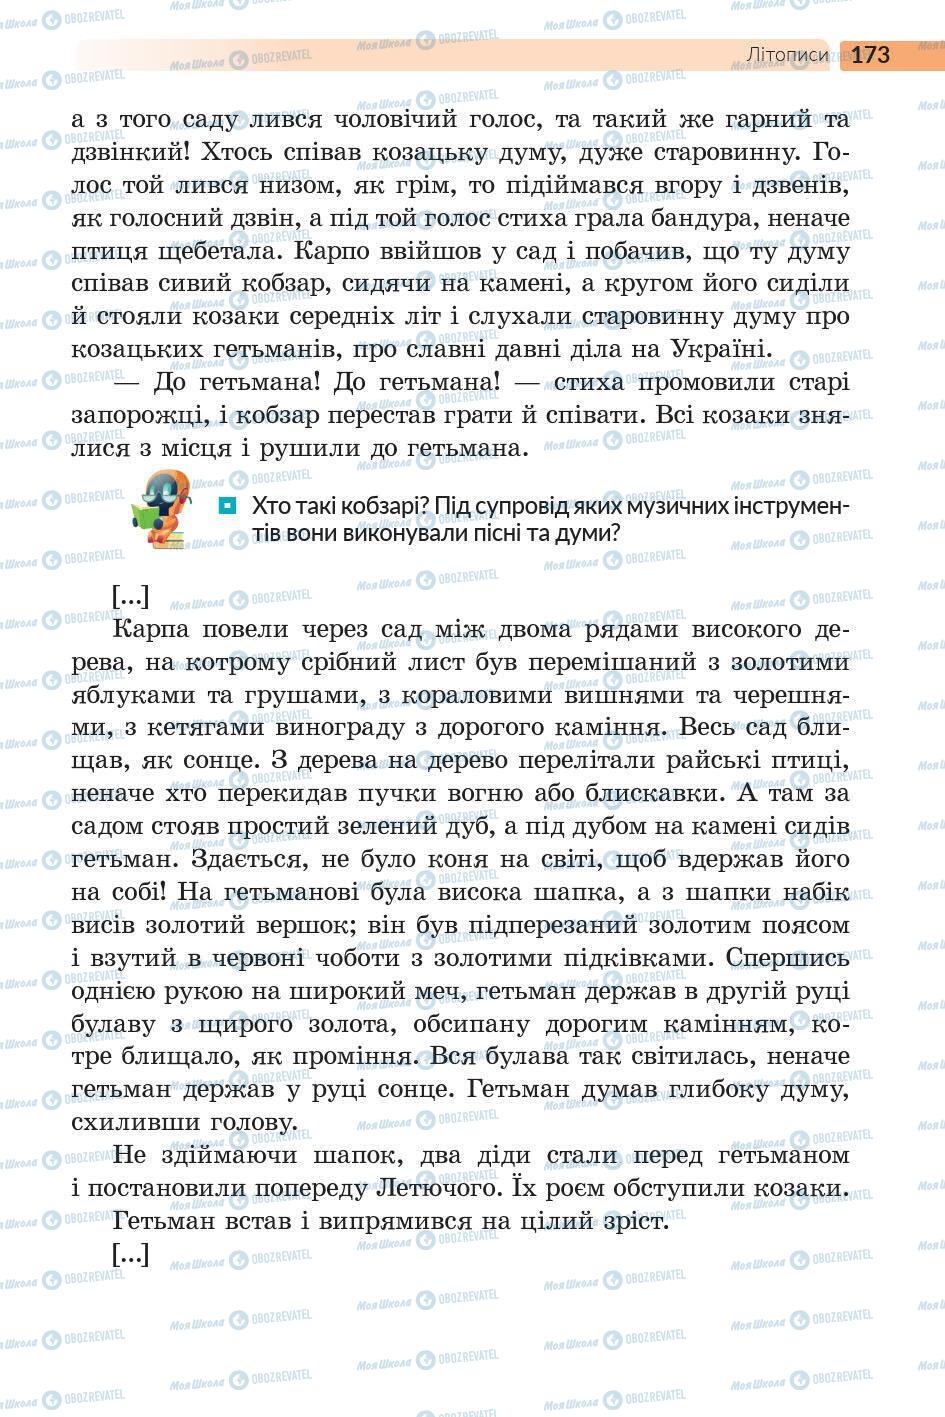 Підручники Українська література 5 клас сторінка 174